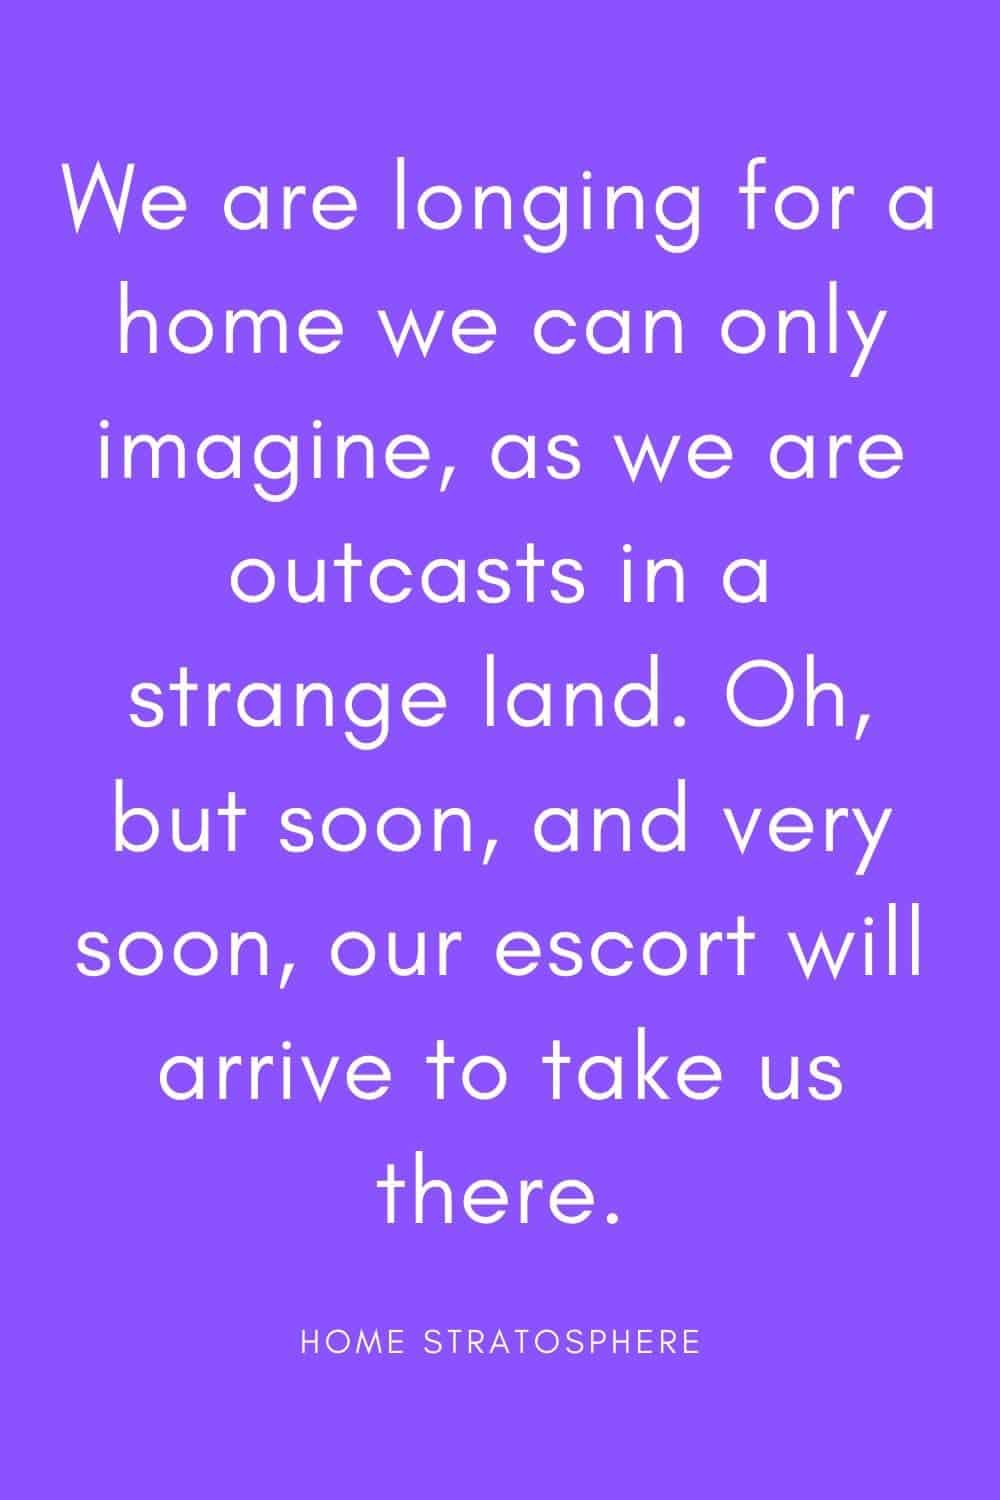 “我们渴望一个我们只能想象的家，因为我们被放逐在一个陌生的土地上。哦，但是很快，很快，我们的护卫队就会来带我们去那里。”